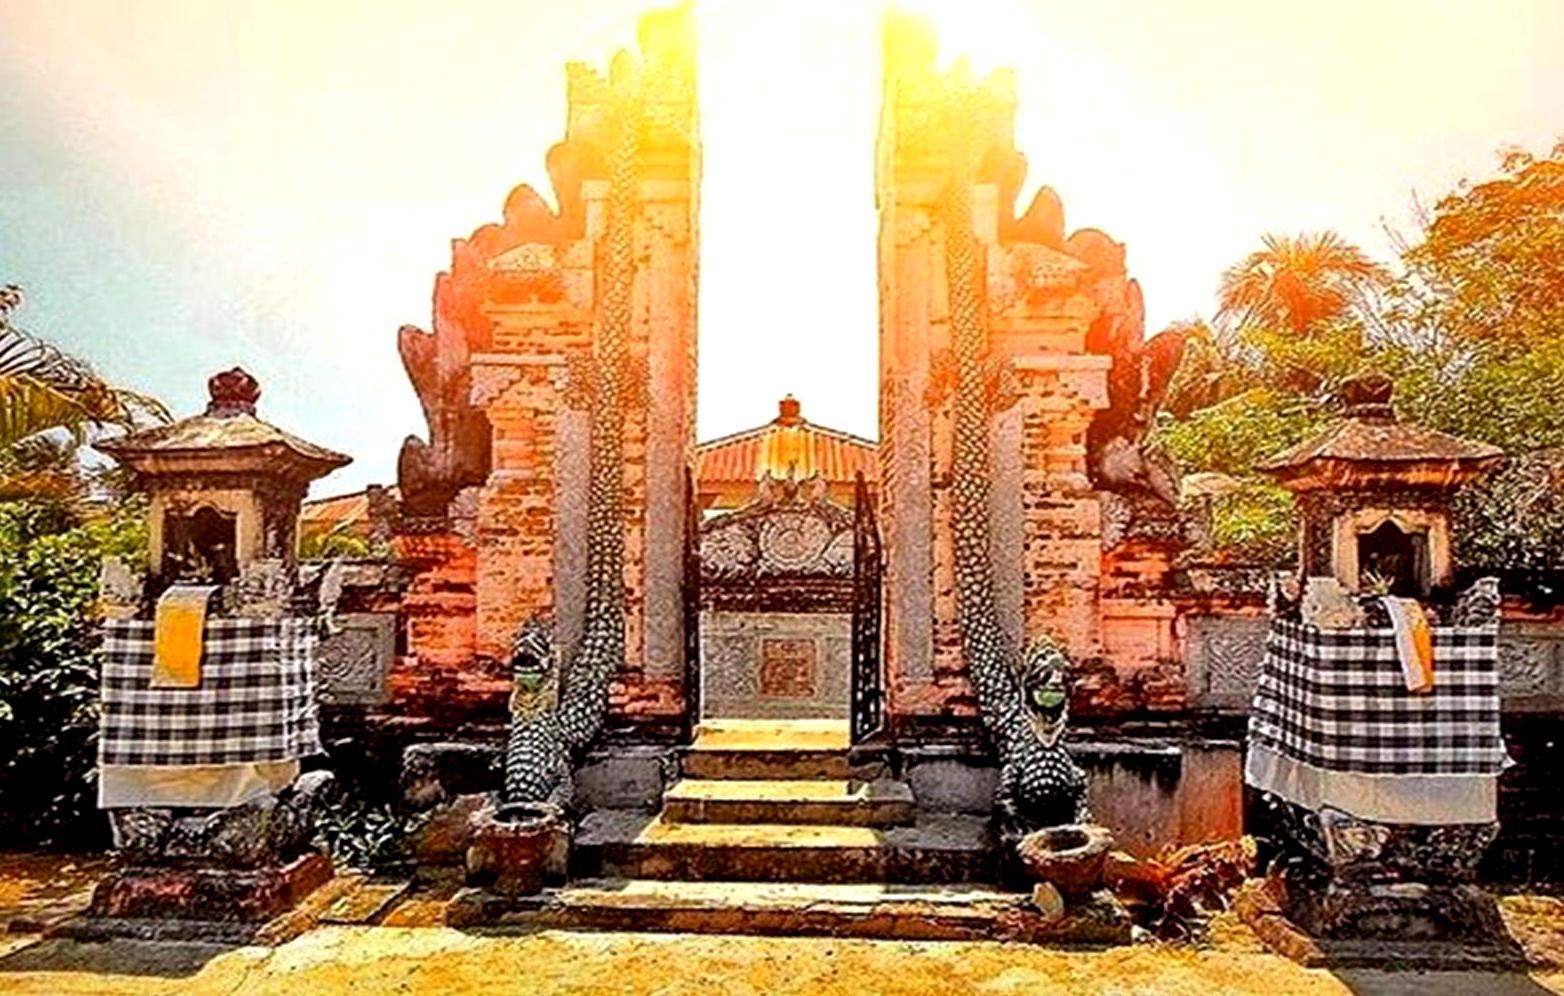 Menelusuri Wisata Bali di Langkat Pariwisata Sumut